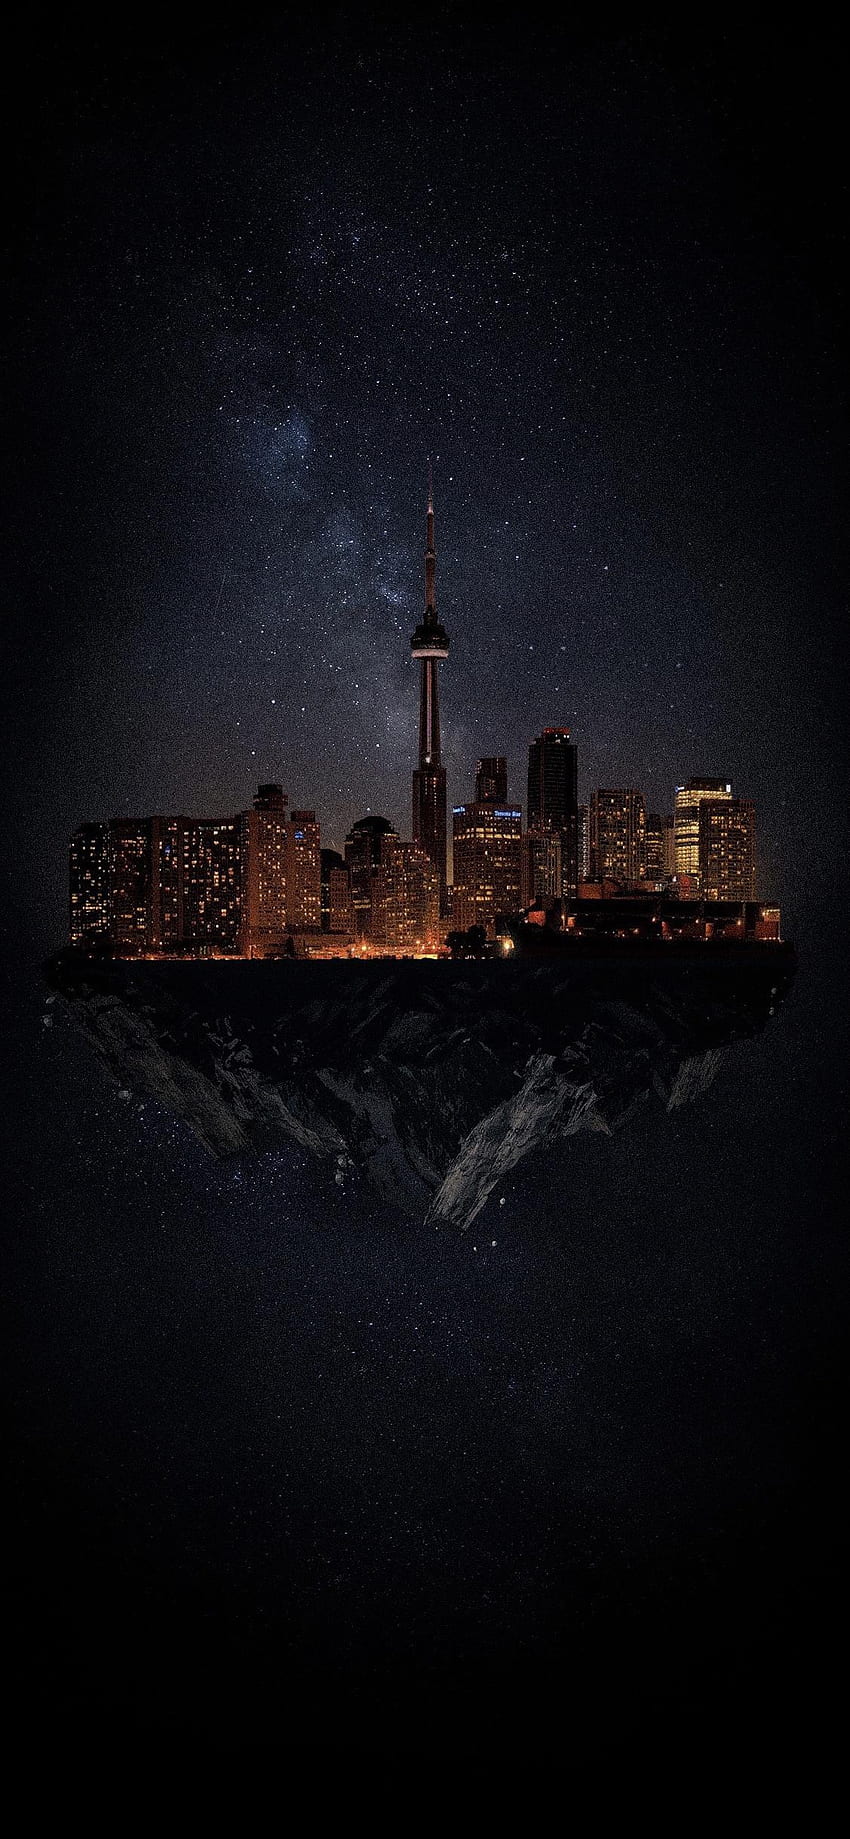 Saya membuat ponsel mode gelap Toronto! Ingin melakukan kota-kota lain di Ontario selanjutnya, beri saya beberapa saran!: ontario, Torento wallpaper ponsel HD